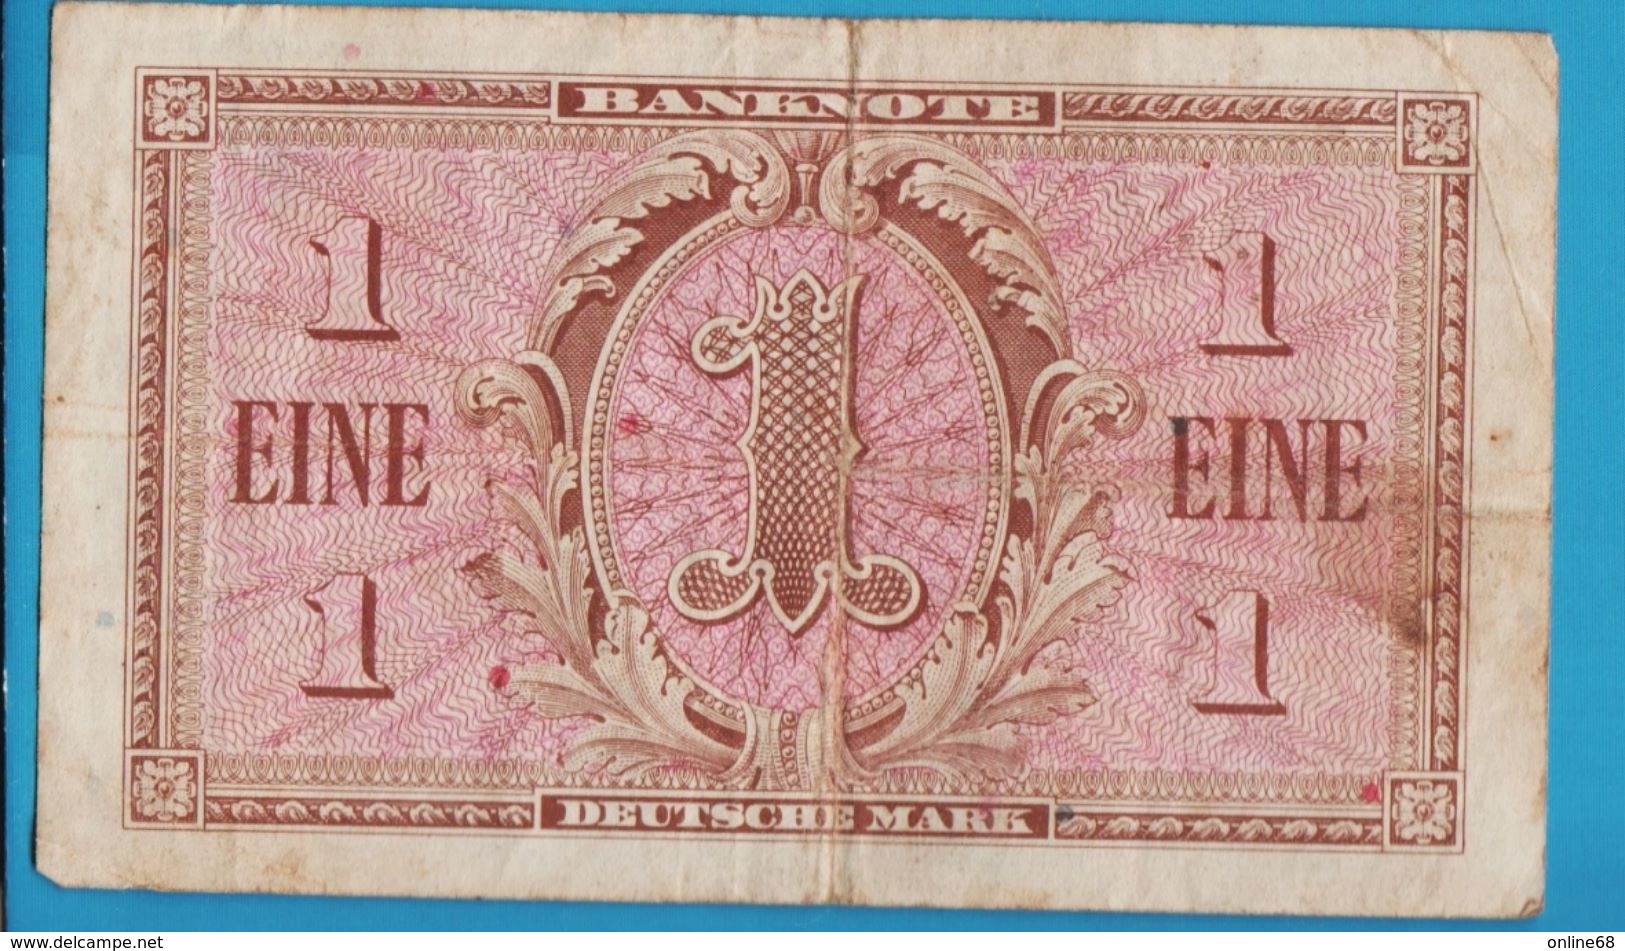 DEUTSCHLAND BANK DEUTSCHER LÄNDER 1 MARK 1948 Banknote - 1 Mark